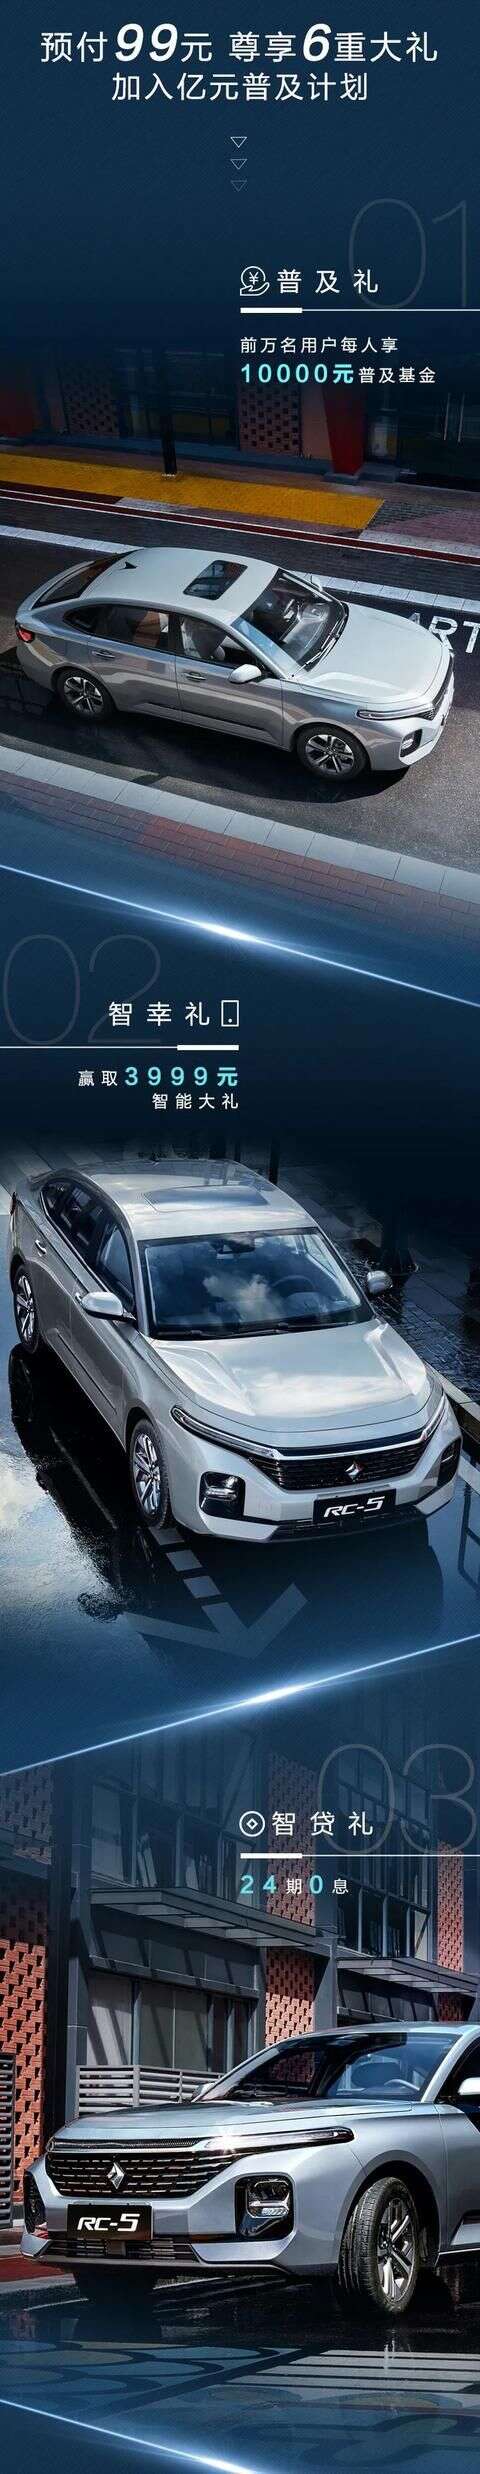 新寶駿rc 5預售6 98萬元起提供旅行版車型搭1 5l及1 5t發動機 楠木軒